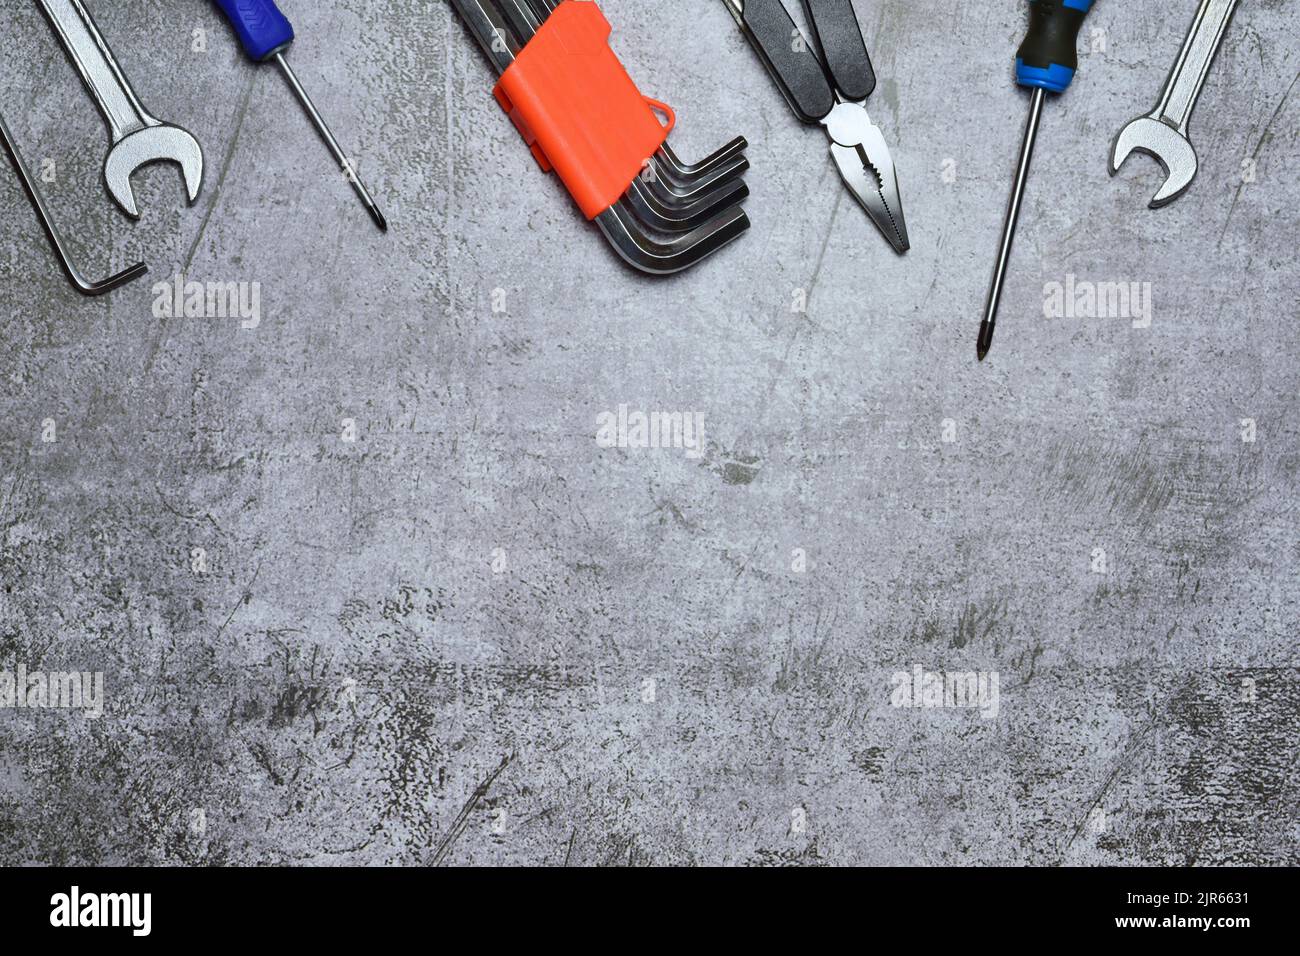 Eine Auswahl an Werkzeugen und verschiedenen, auf einem Steinhintergrund isolierten Werkzeugen Stockfoto